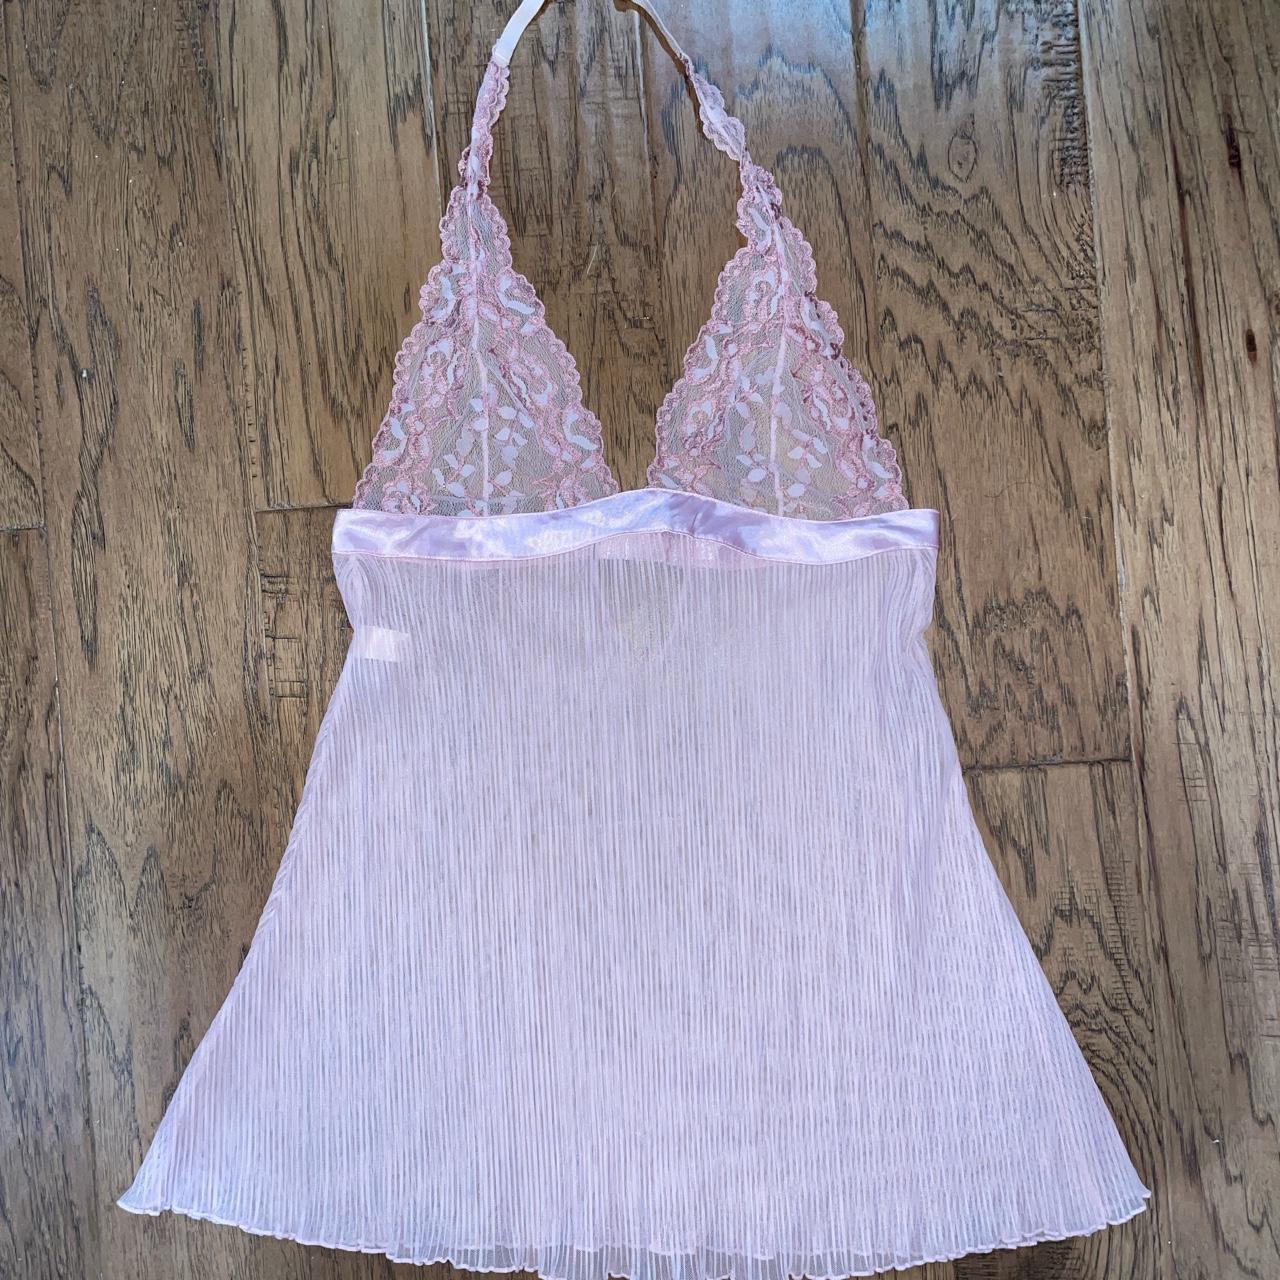 Pink sheer lacey floral halter lingerie top Size 36B... - Depop